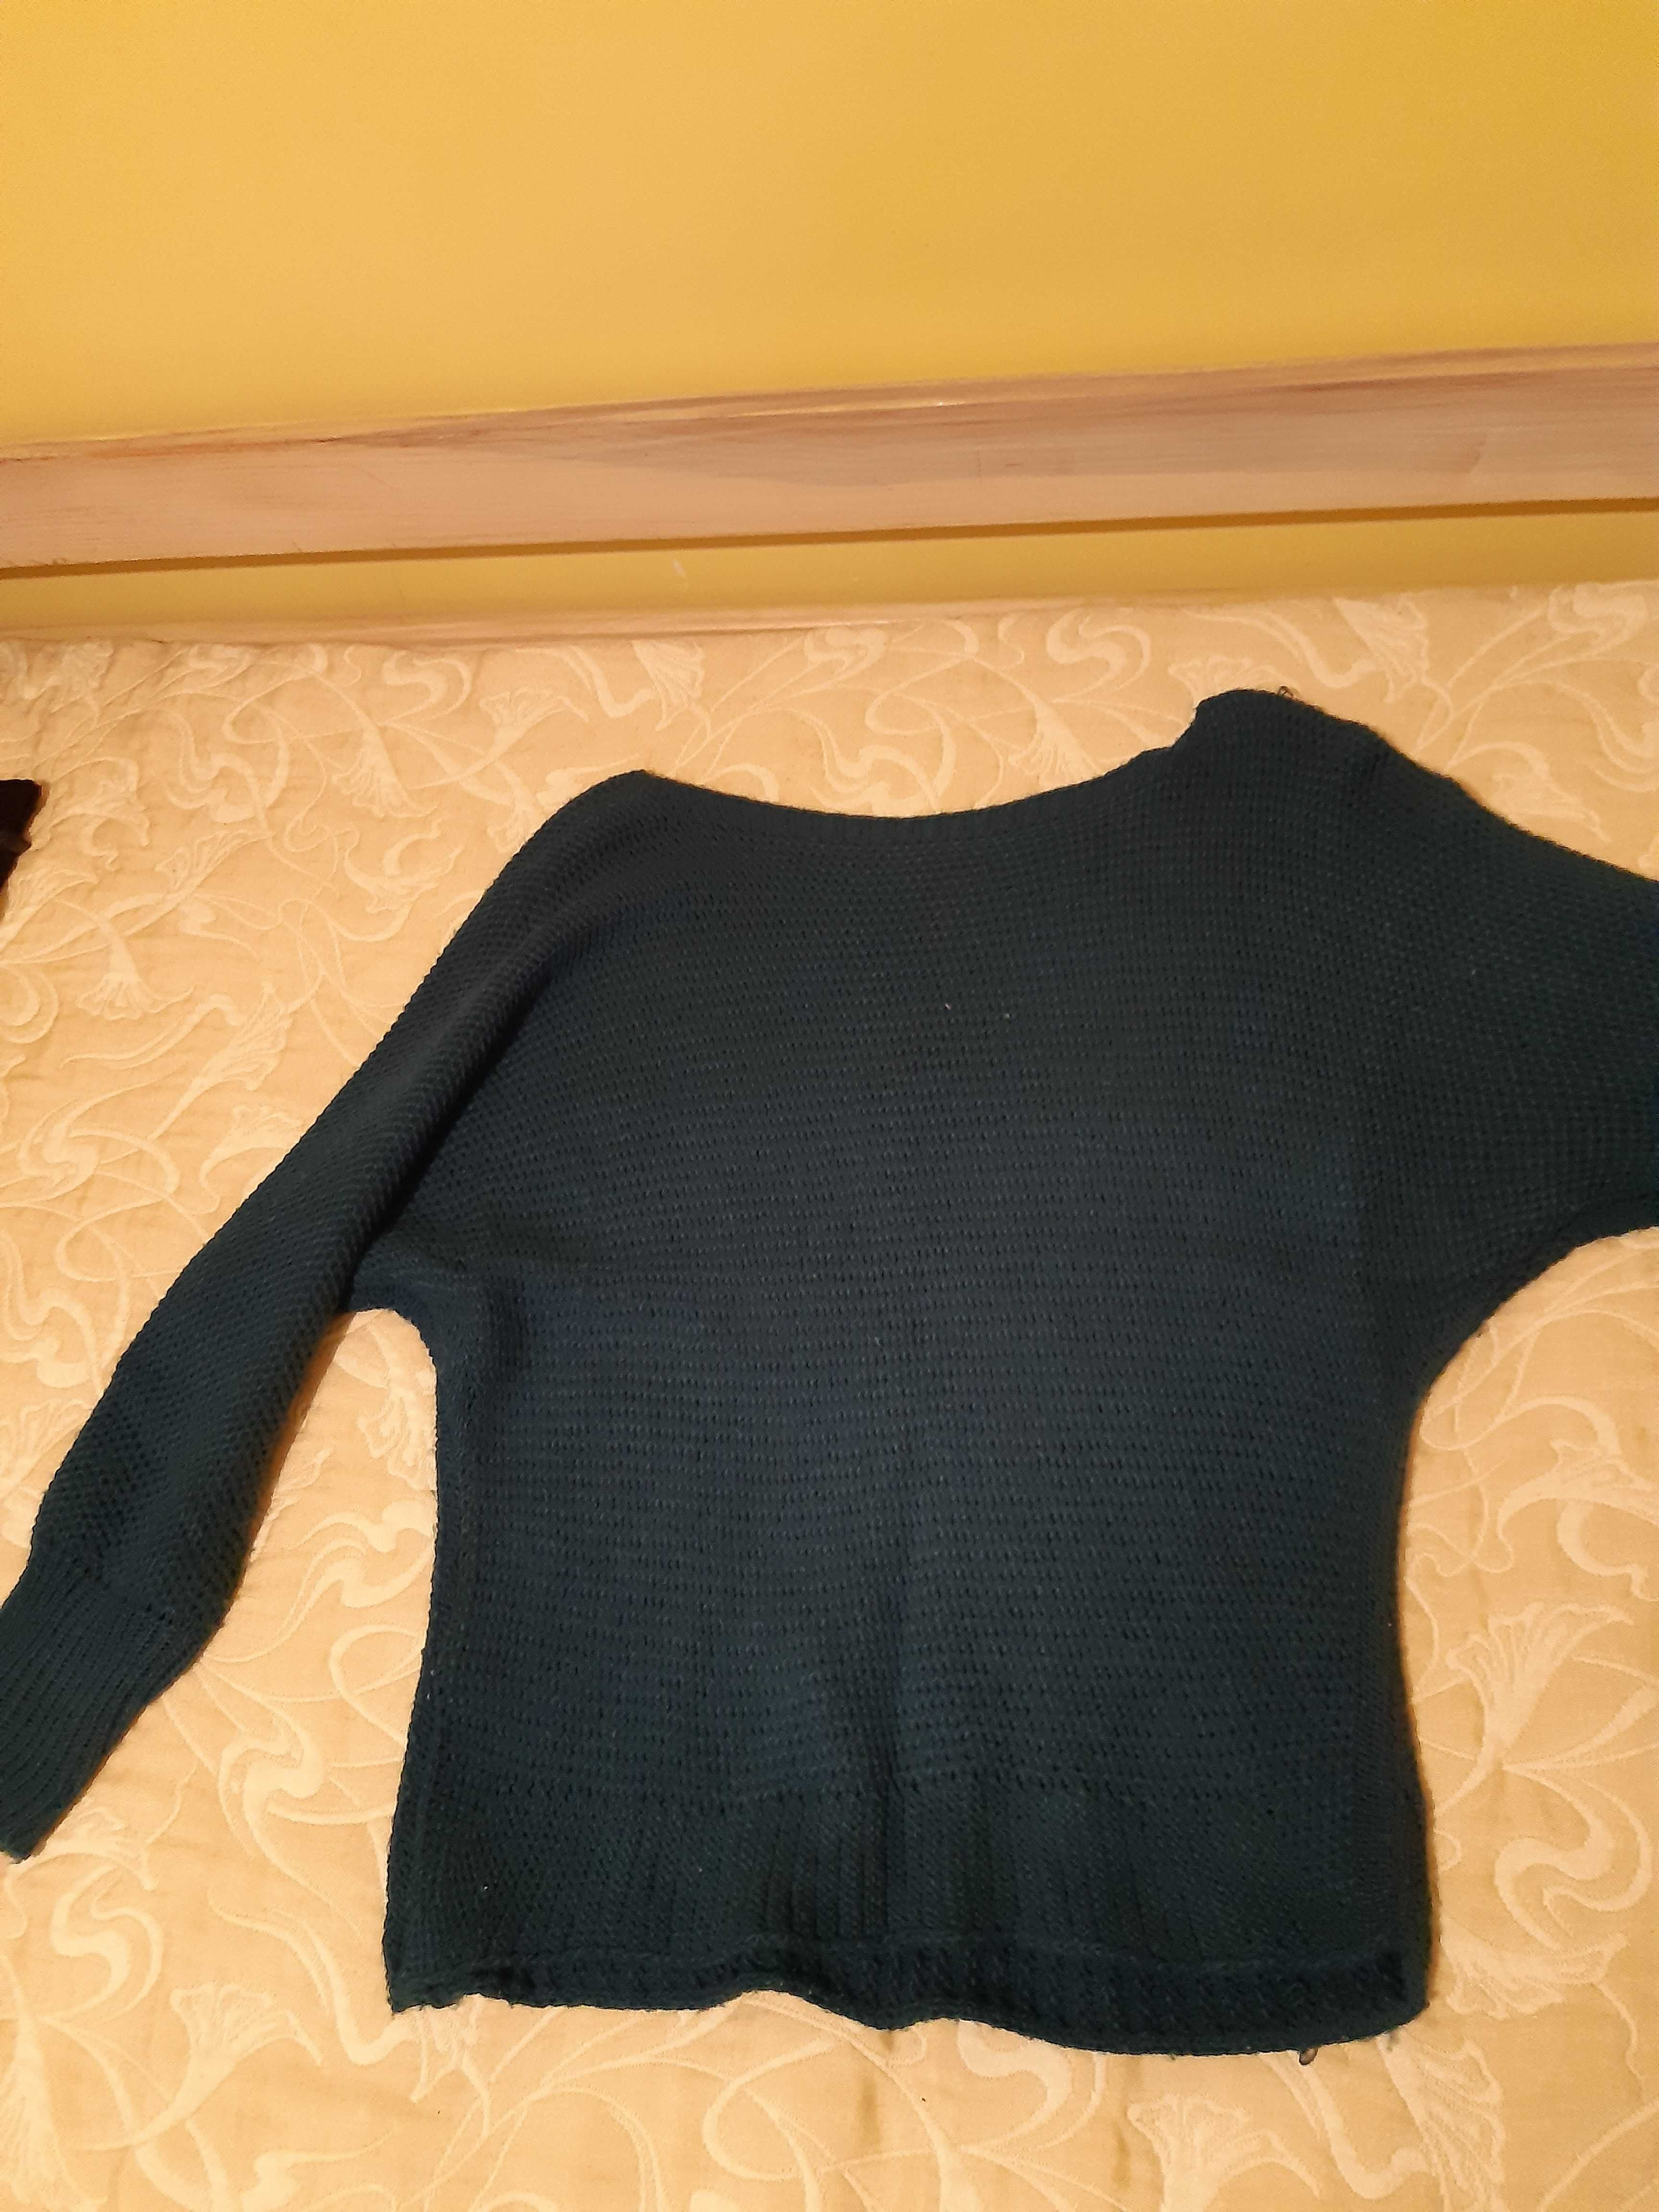 Swetry M/L, używane